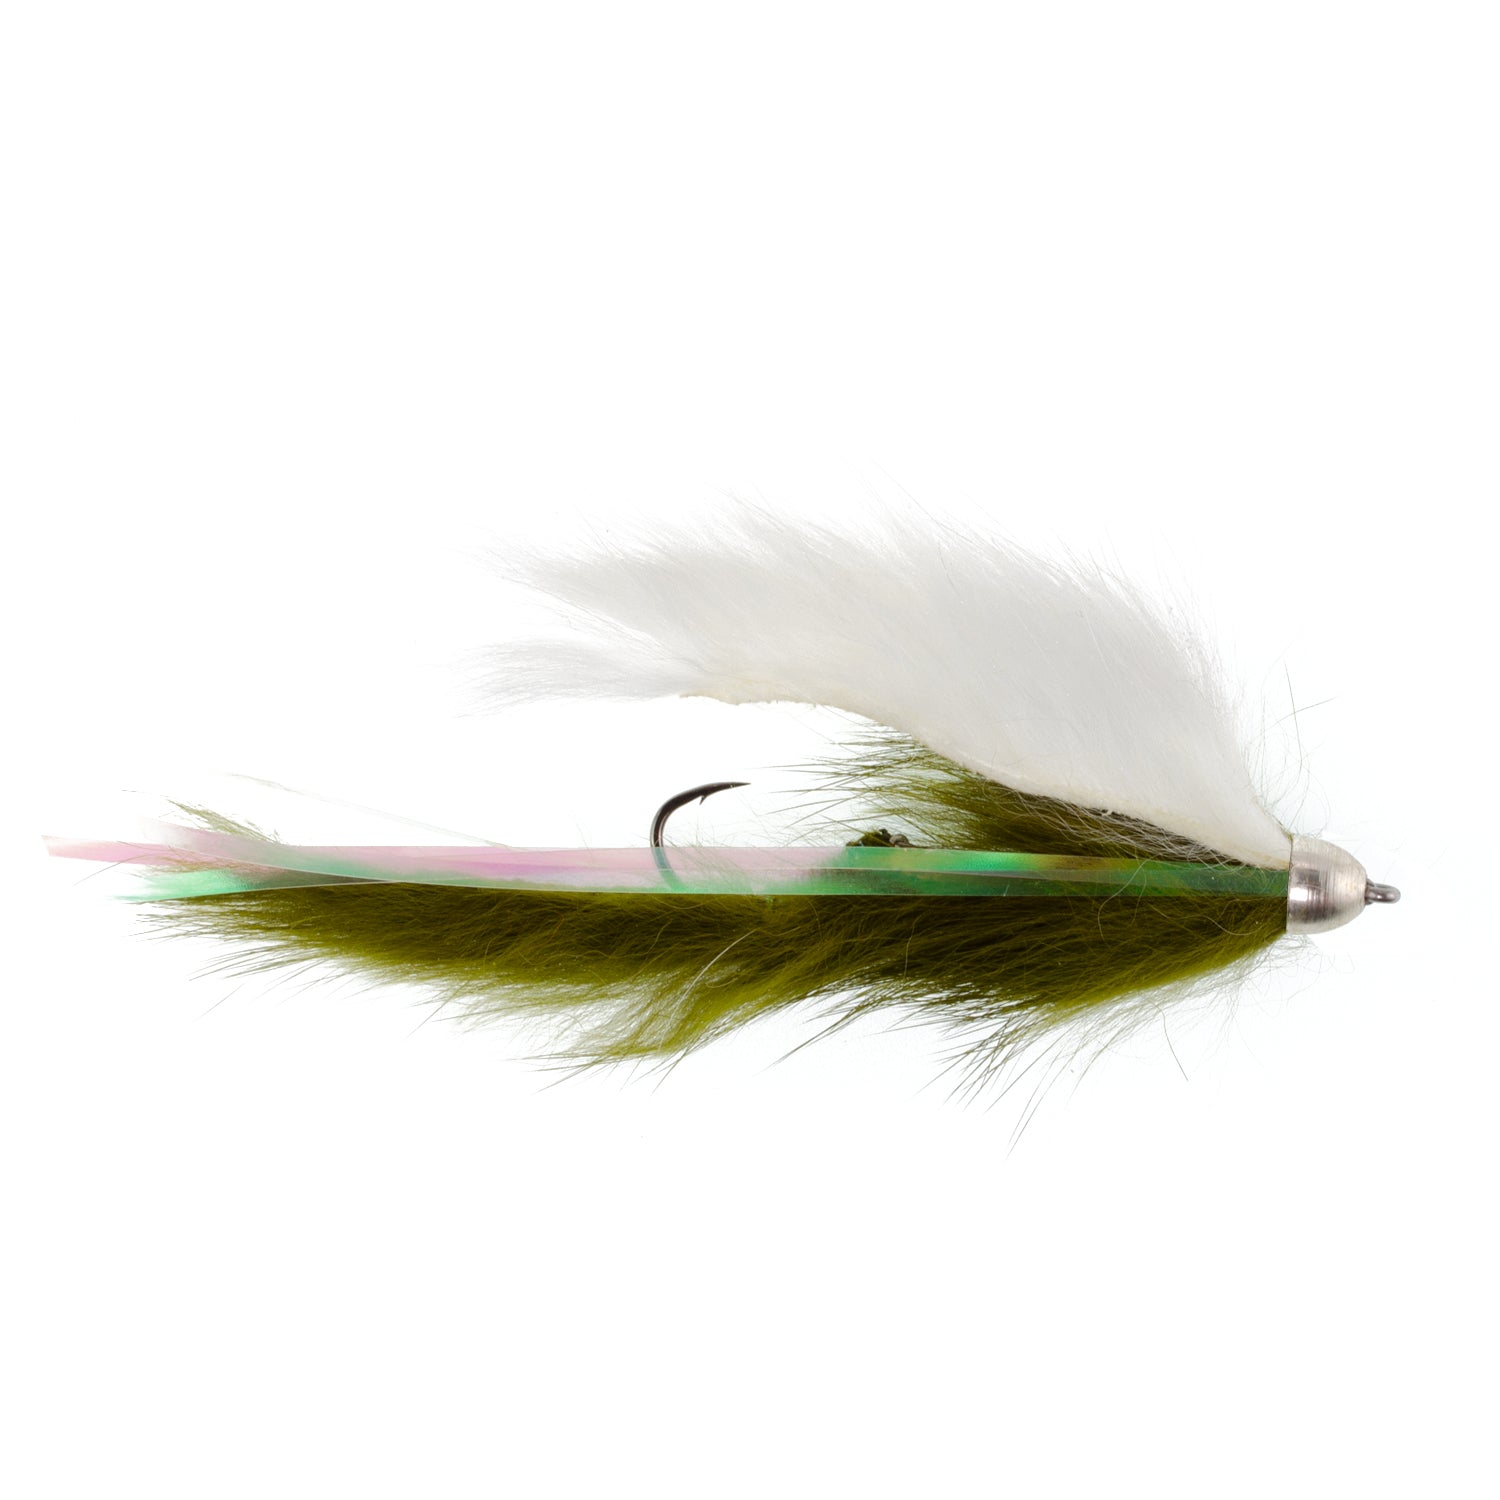 Dolly Llama Stinger Streamer Flies Collection - Juego de 4 moscas para pesca con mosca de salmón, trucha arcoíris, Alaska, tamaño de gancho 4 